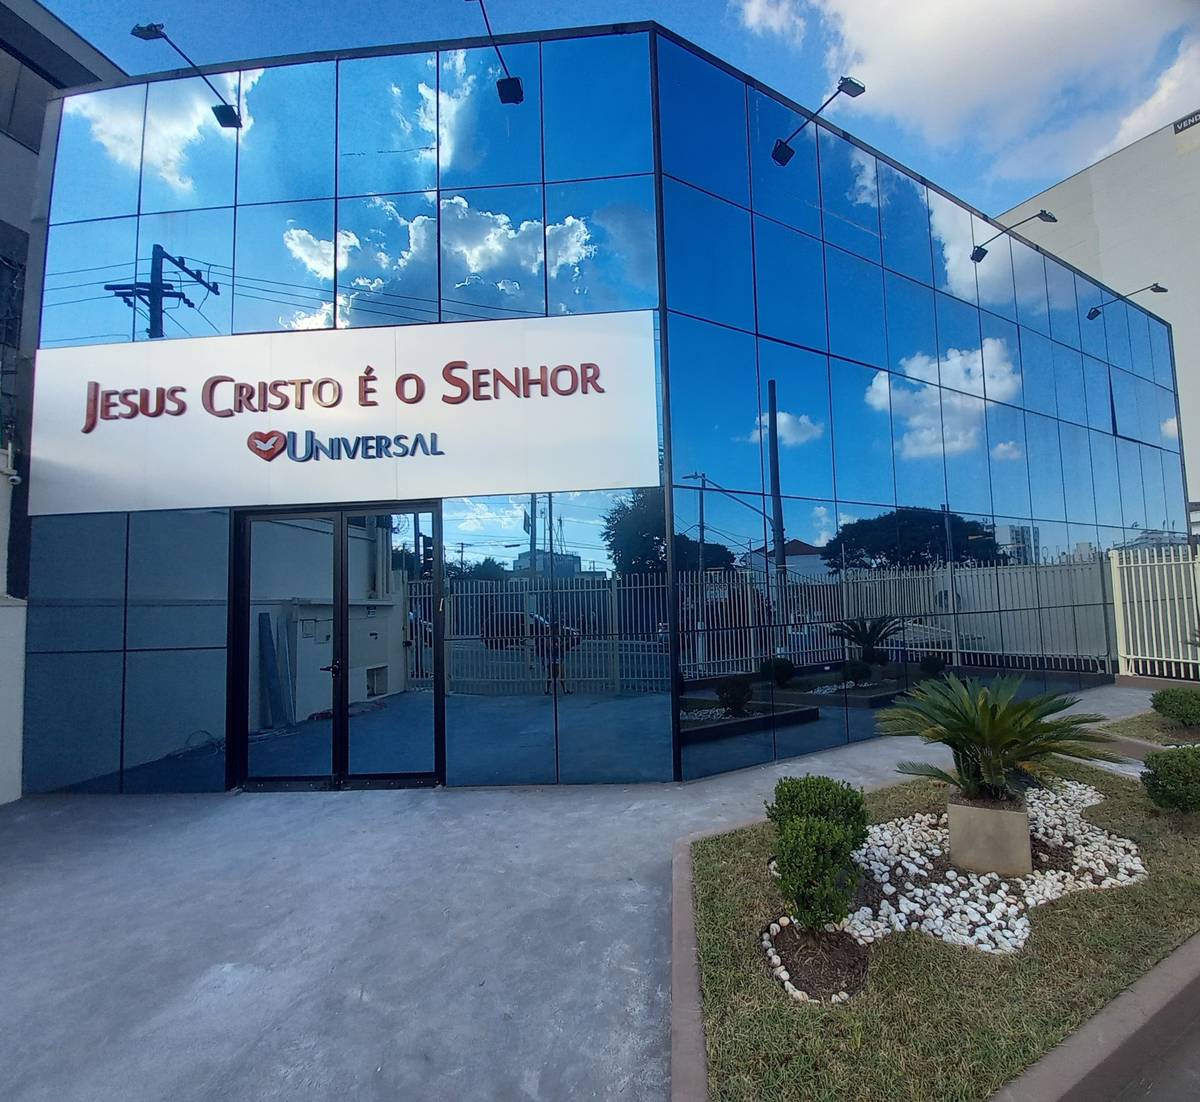 Igreja Universal JABAQUARA - Avenida Engenheiro Armando de Arruda Pereira, 1221 - Jabaquara, São Paulo - São Paulo  - 04309010 - Brasil, 1221 - Jabaquara São Paulo - São Paulo - Brasil